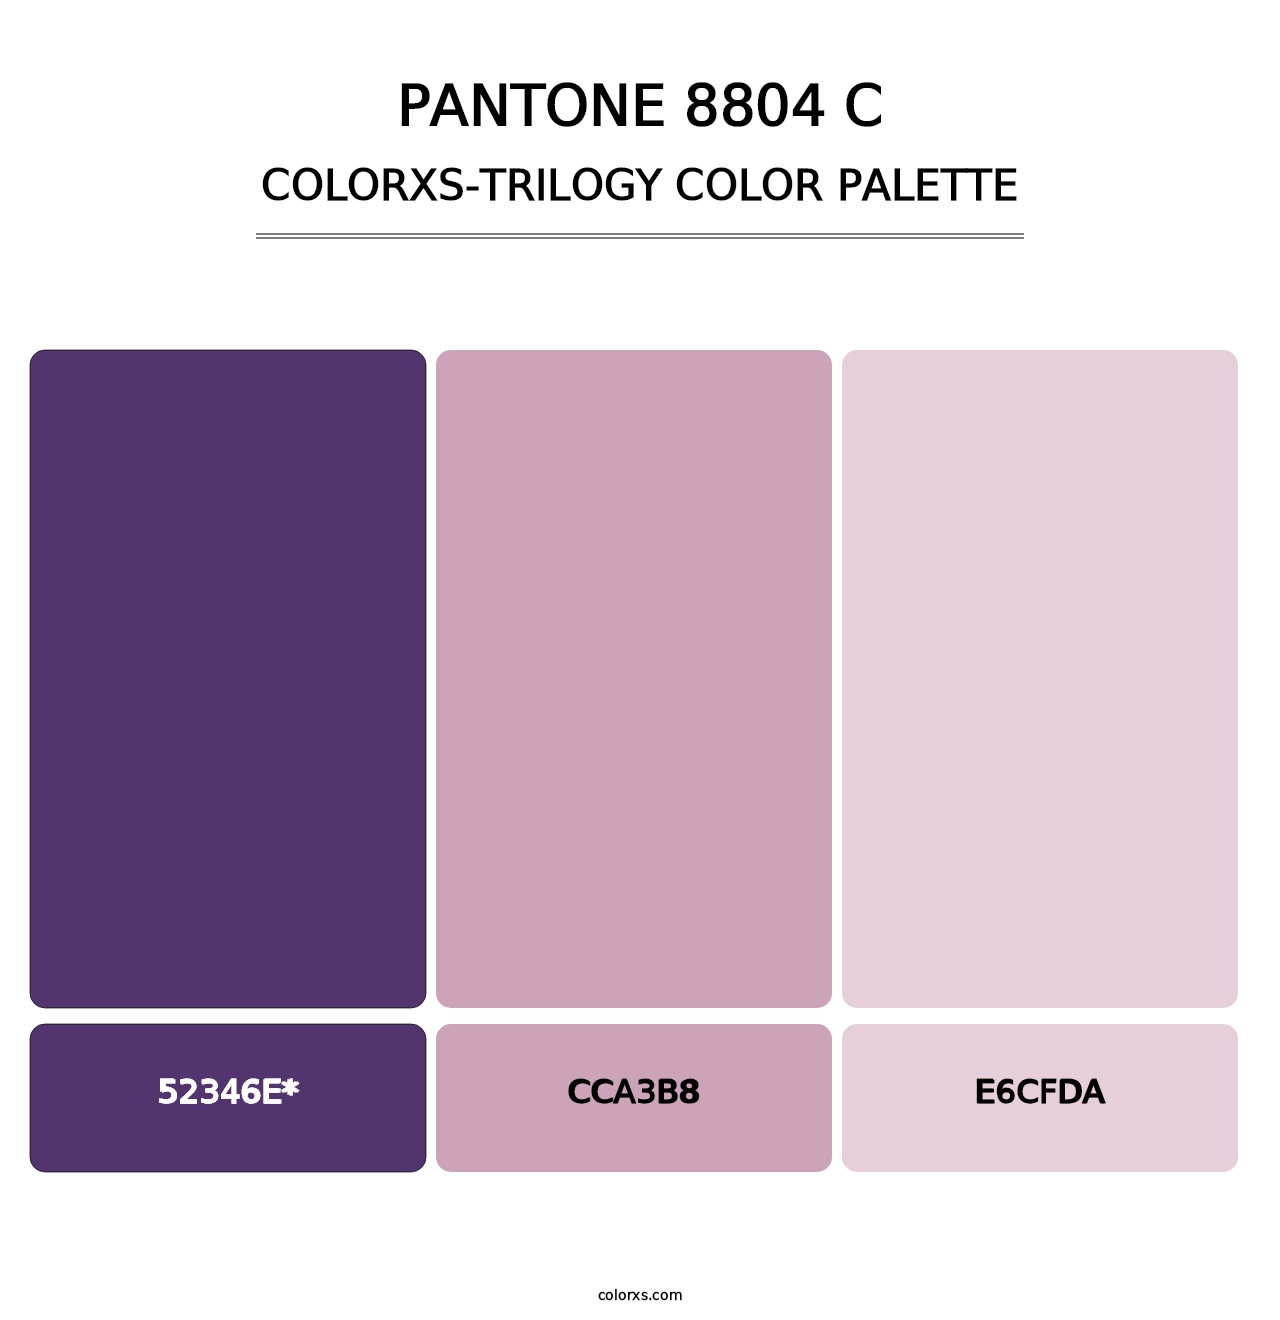 PANTONE 8804 C - Colorxs Trilogy Palette